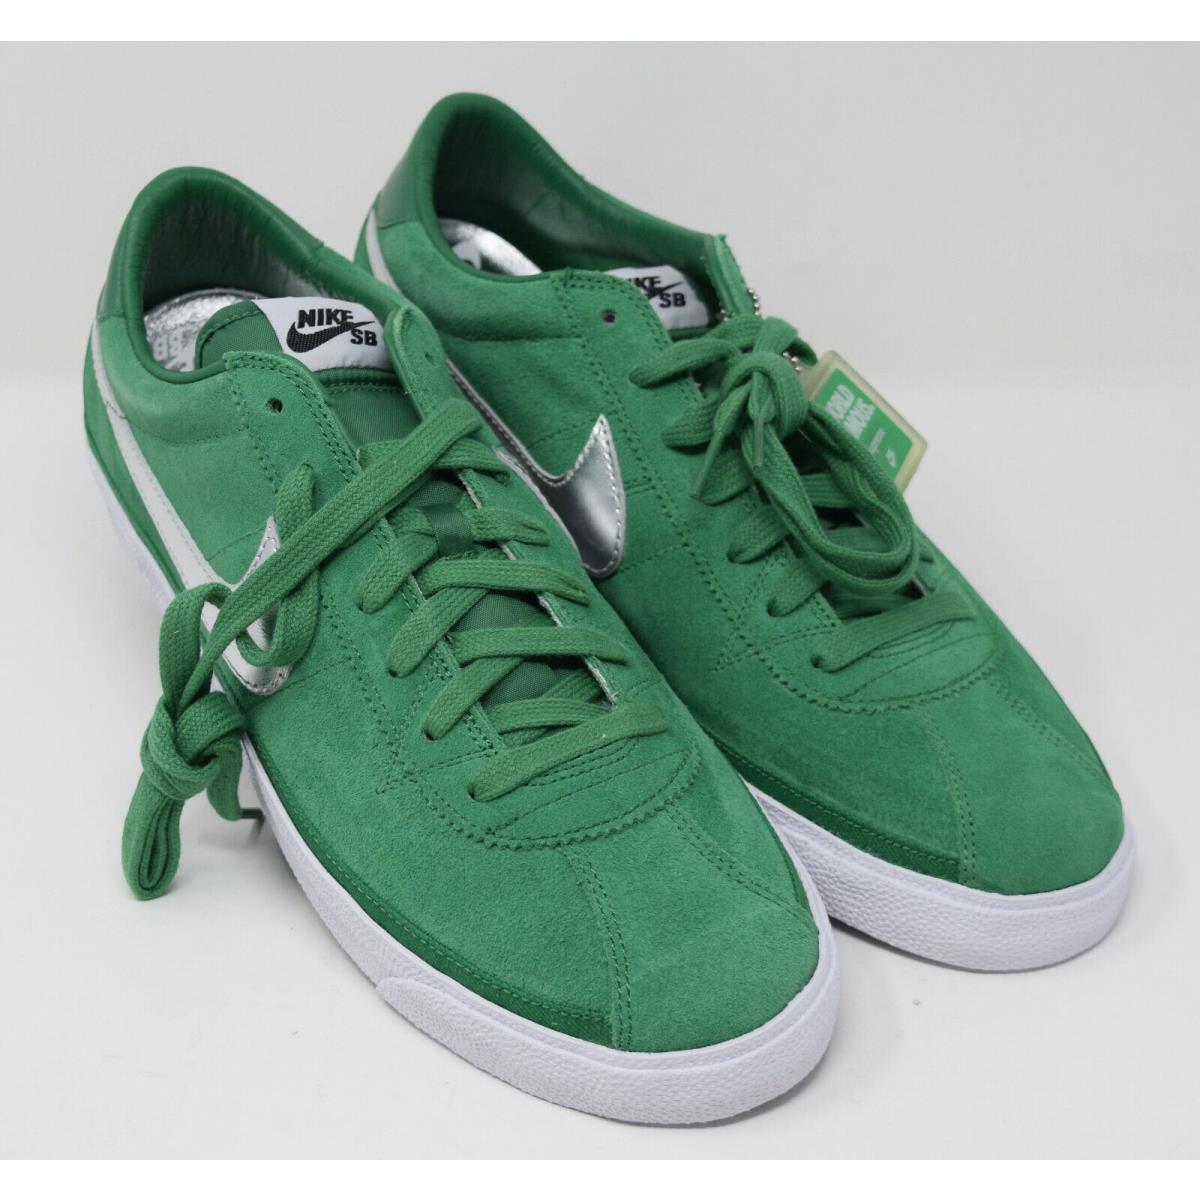 Nike shoes Bruin - Green 0